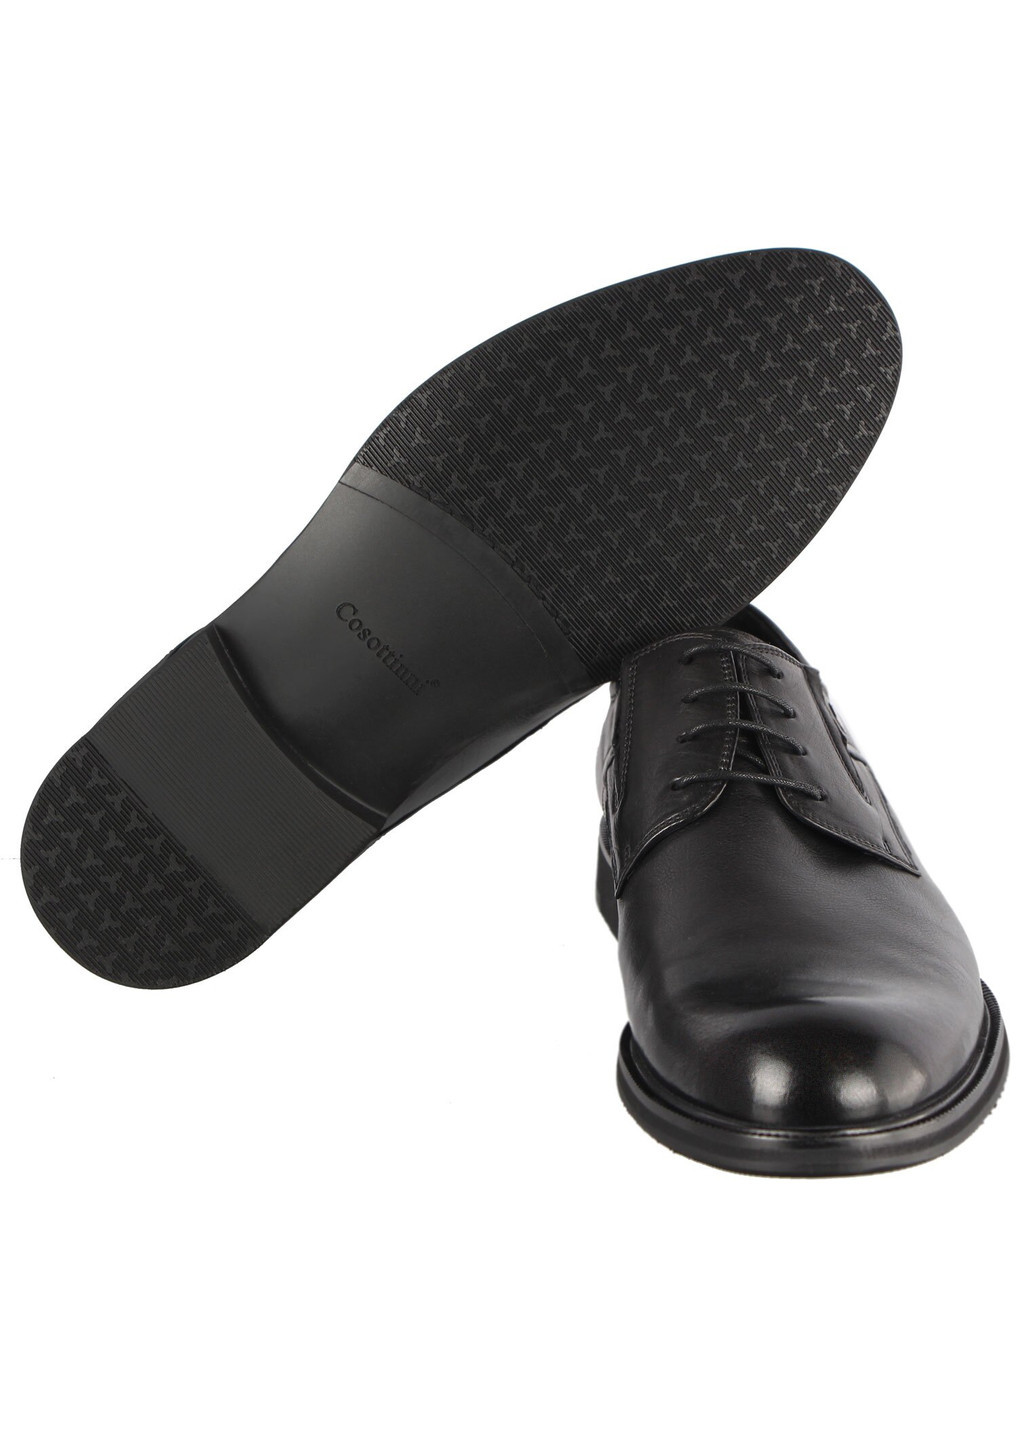 Черные мужские классические туфли 196339 Cosottinni на шнурках